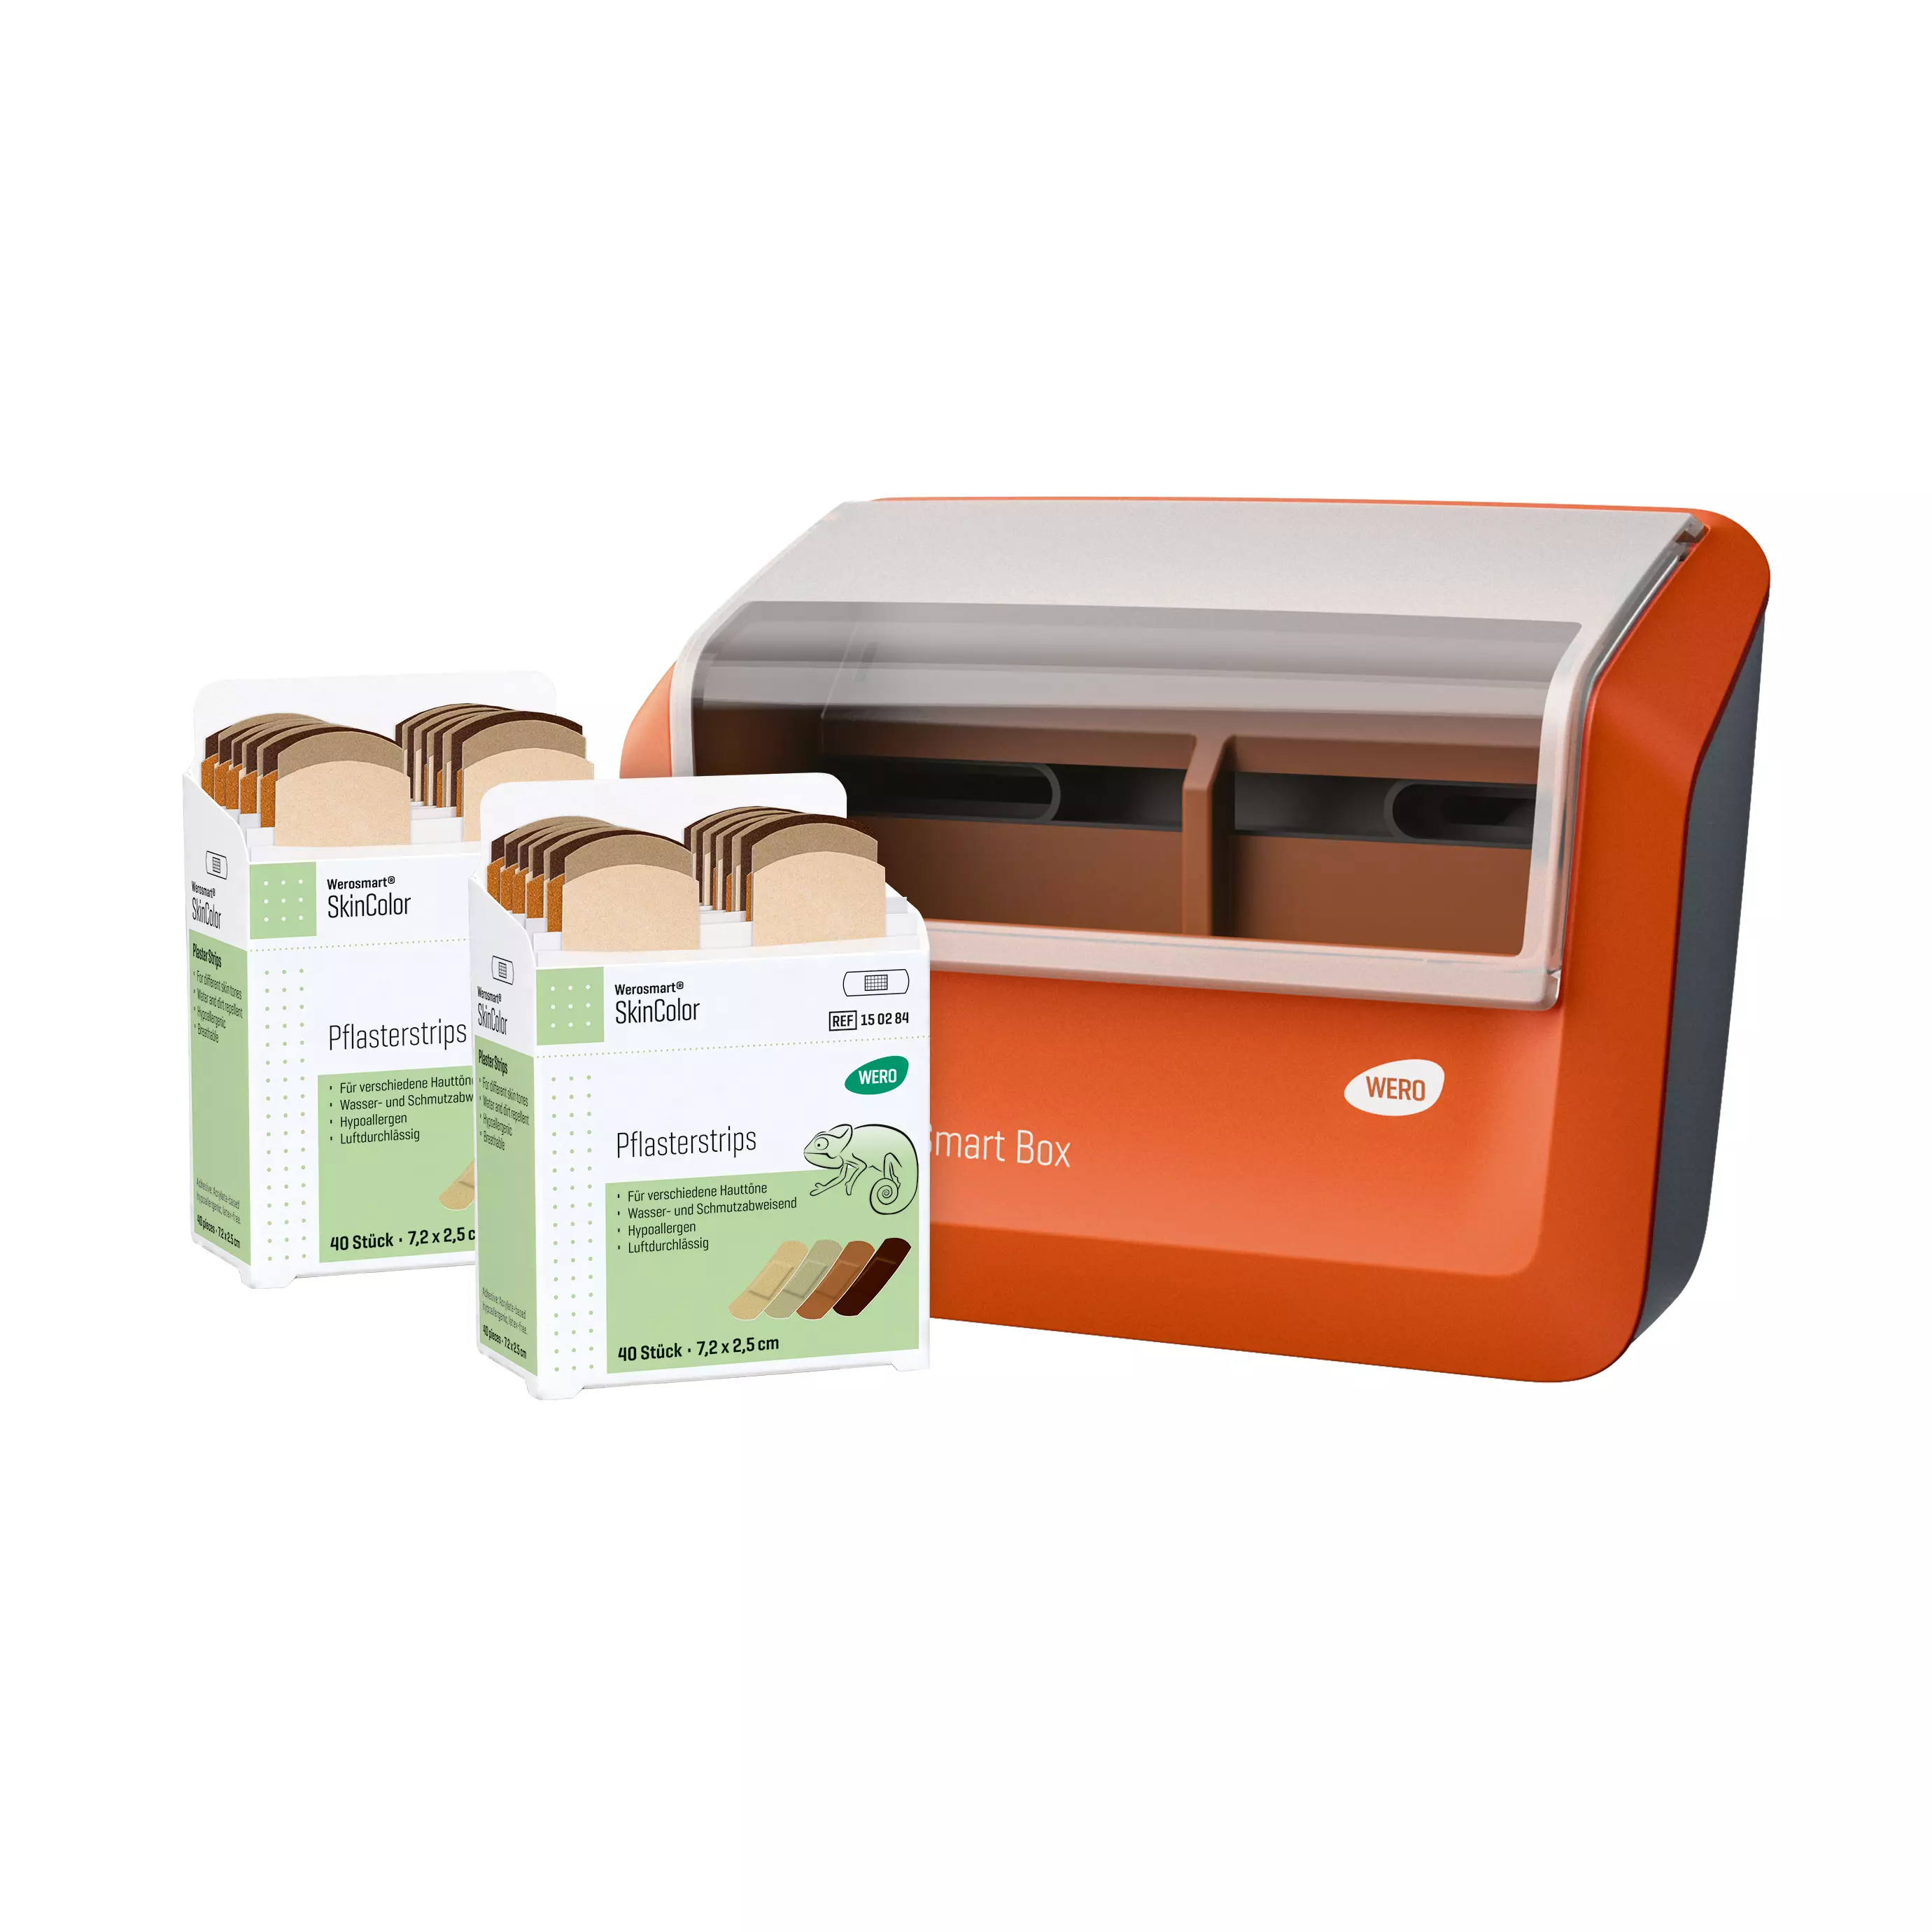 WERO Smart Box® Pflasterspender gefüllt mit SkinColor Pflasterstrips